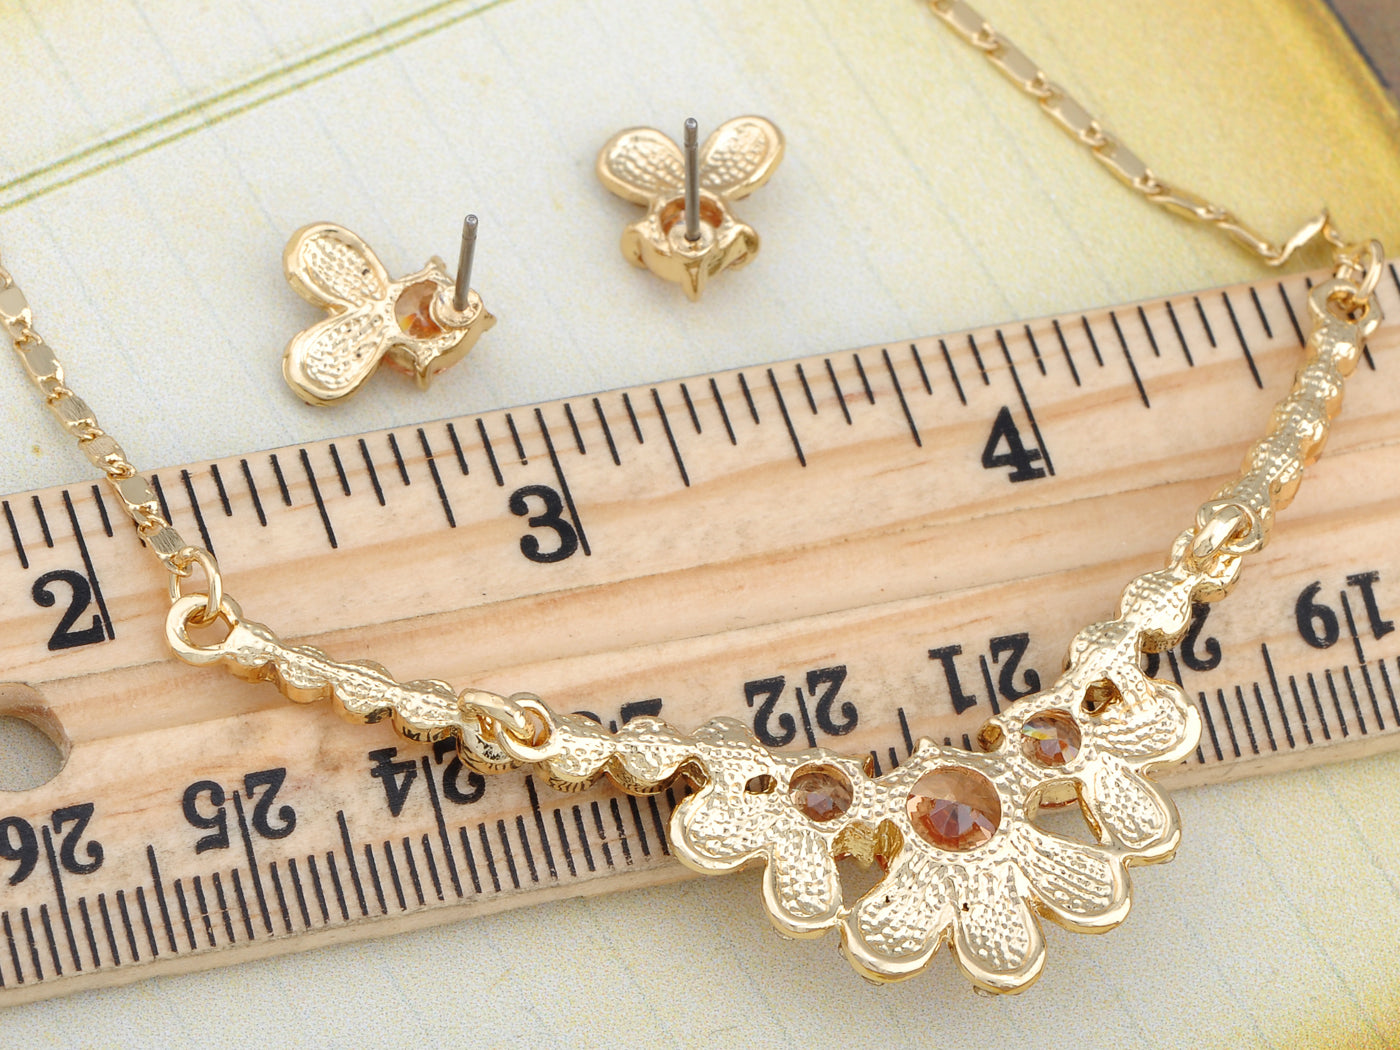 Swarovski Crystal Stem Less Clovers Element Earring Necklace Set